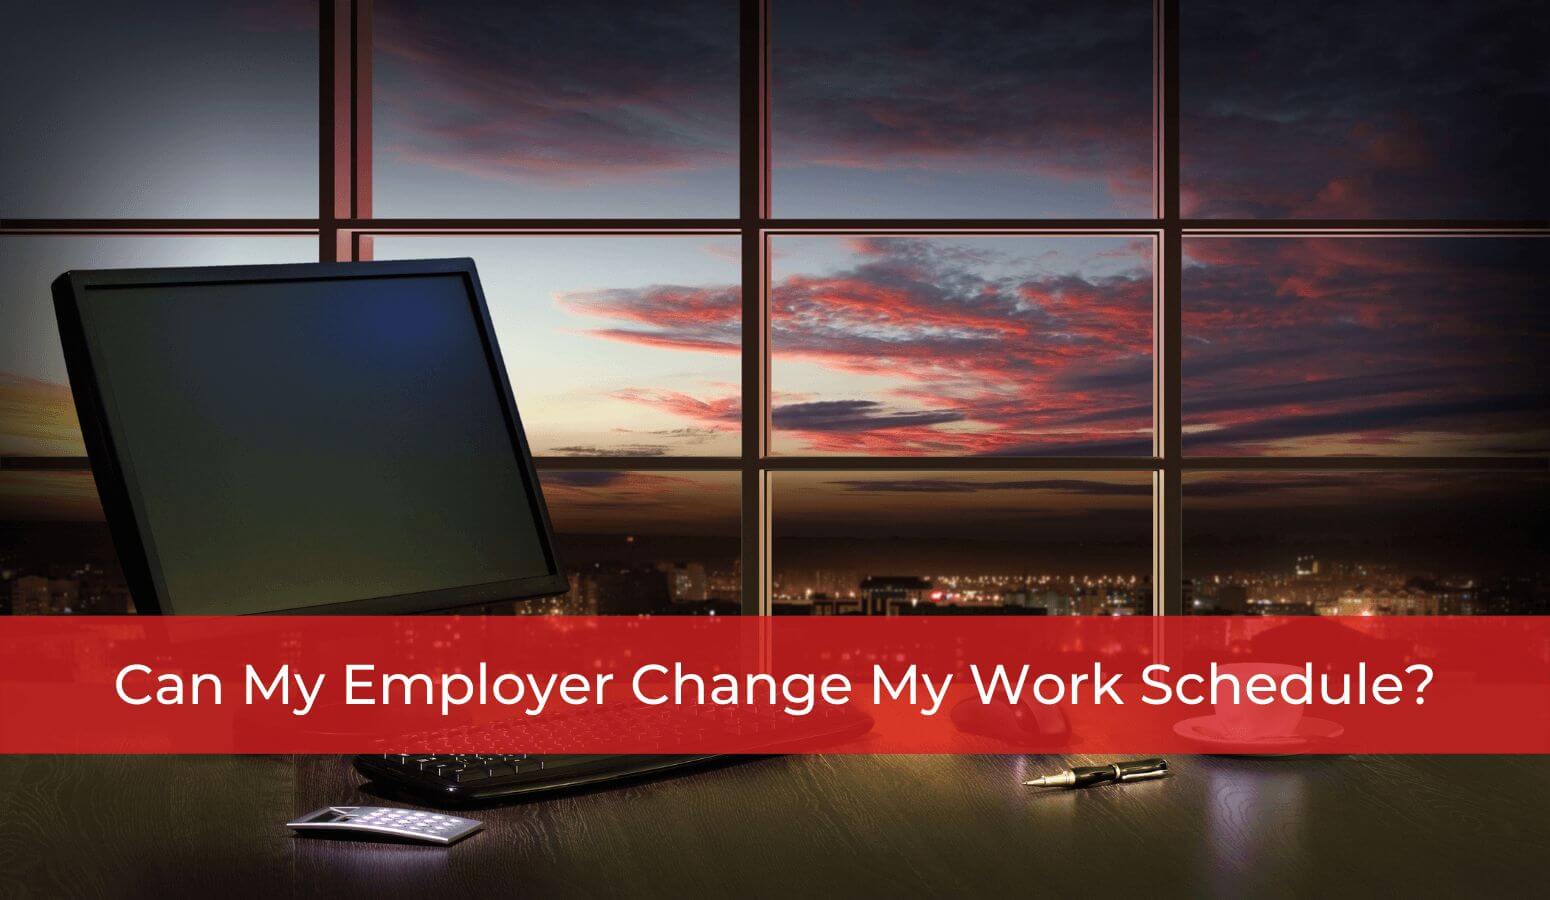 Can my employer change my regular work schedule?